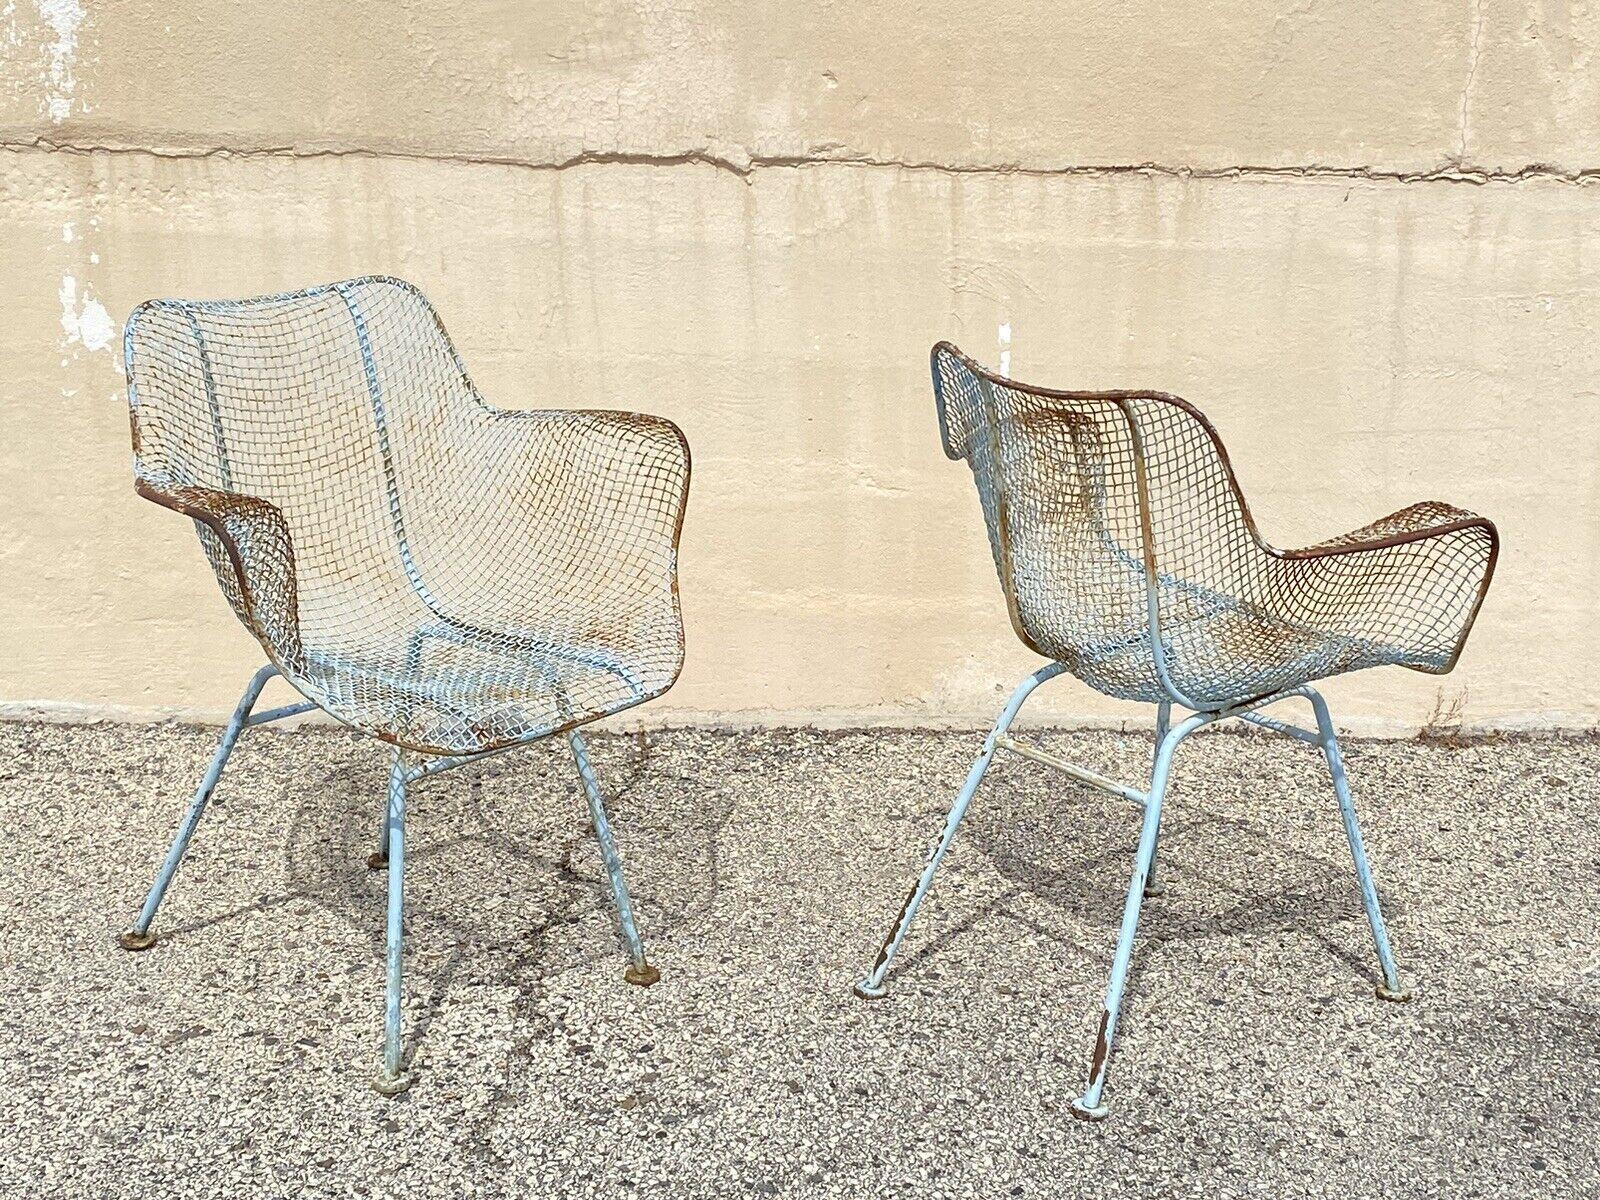 Vintage Mid Century Modern Russell Woodard Sculptura Wrought Iron Blue Distress Painted Arm Chairs - ein Paar. Schmiedeeisenrahmen, blau lackierte Oberfläche, klare modernistische Linien, großer Stil und Form. Circa Mitte des 20. Jahrhunderts.